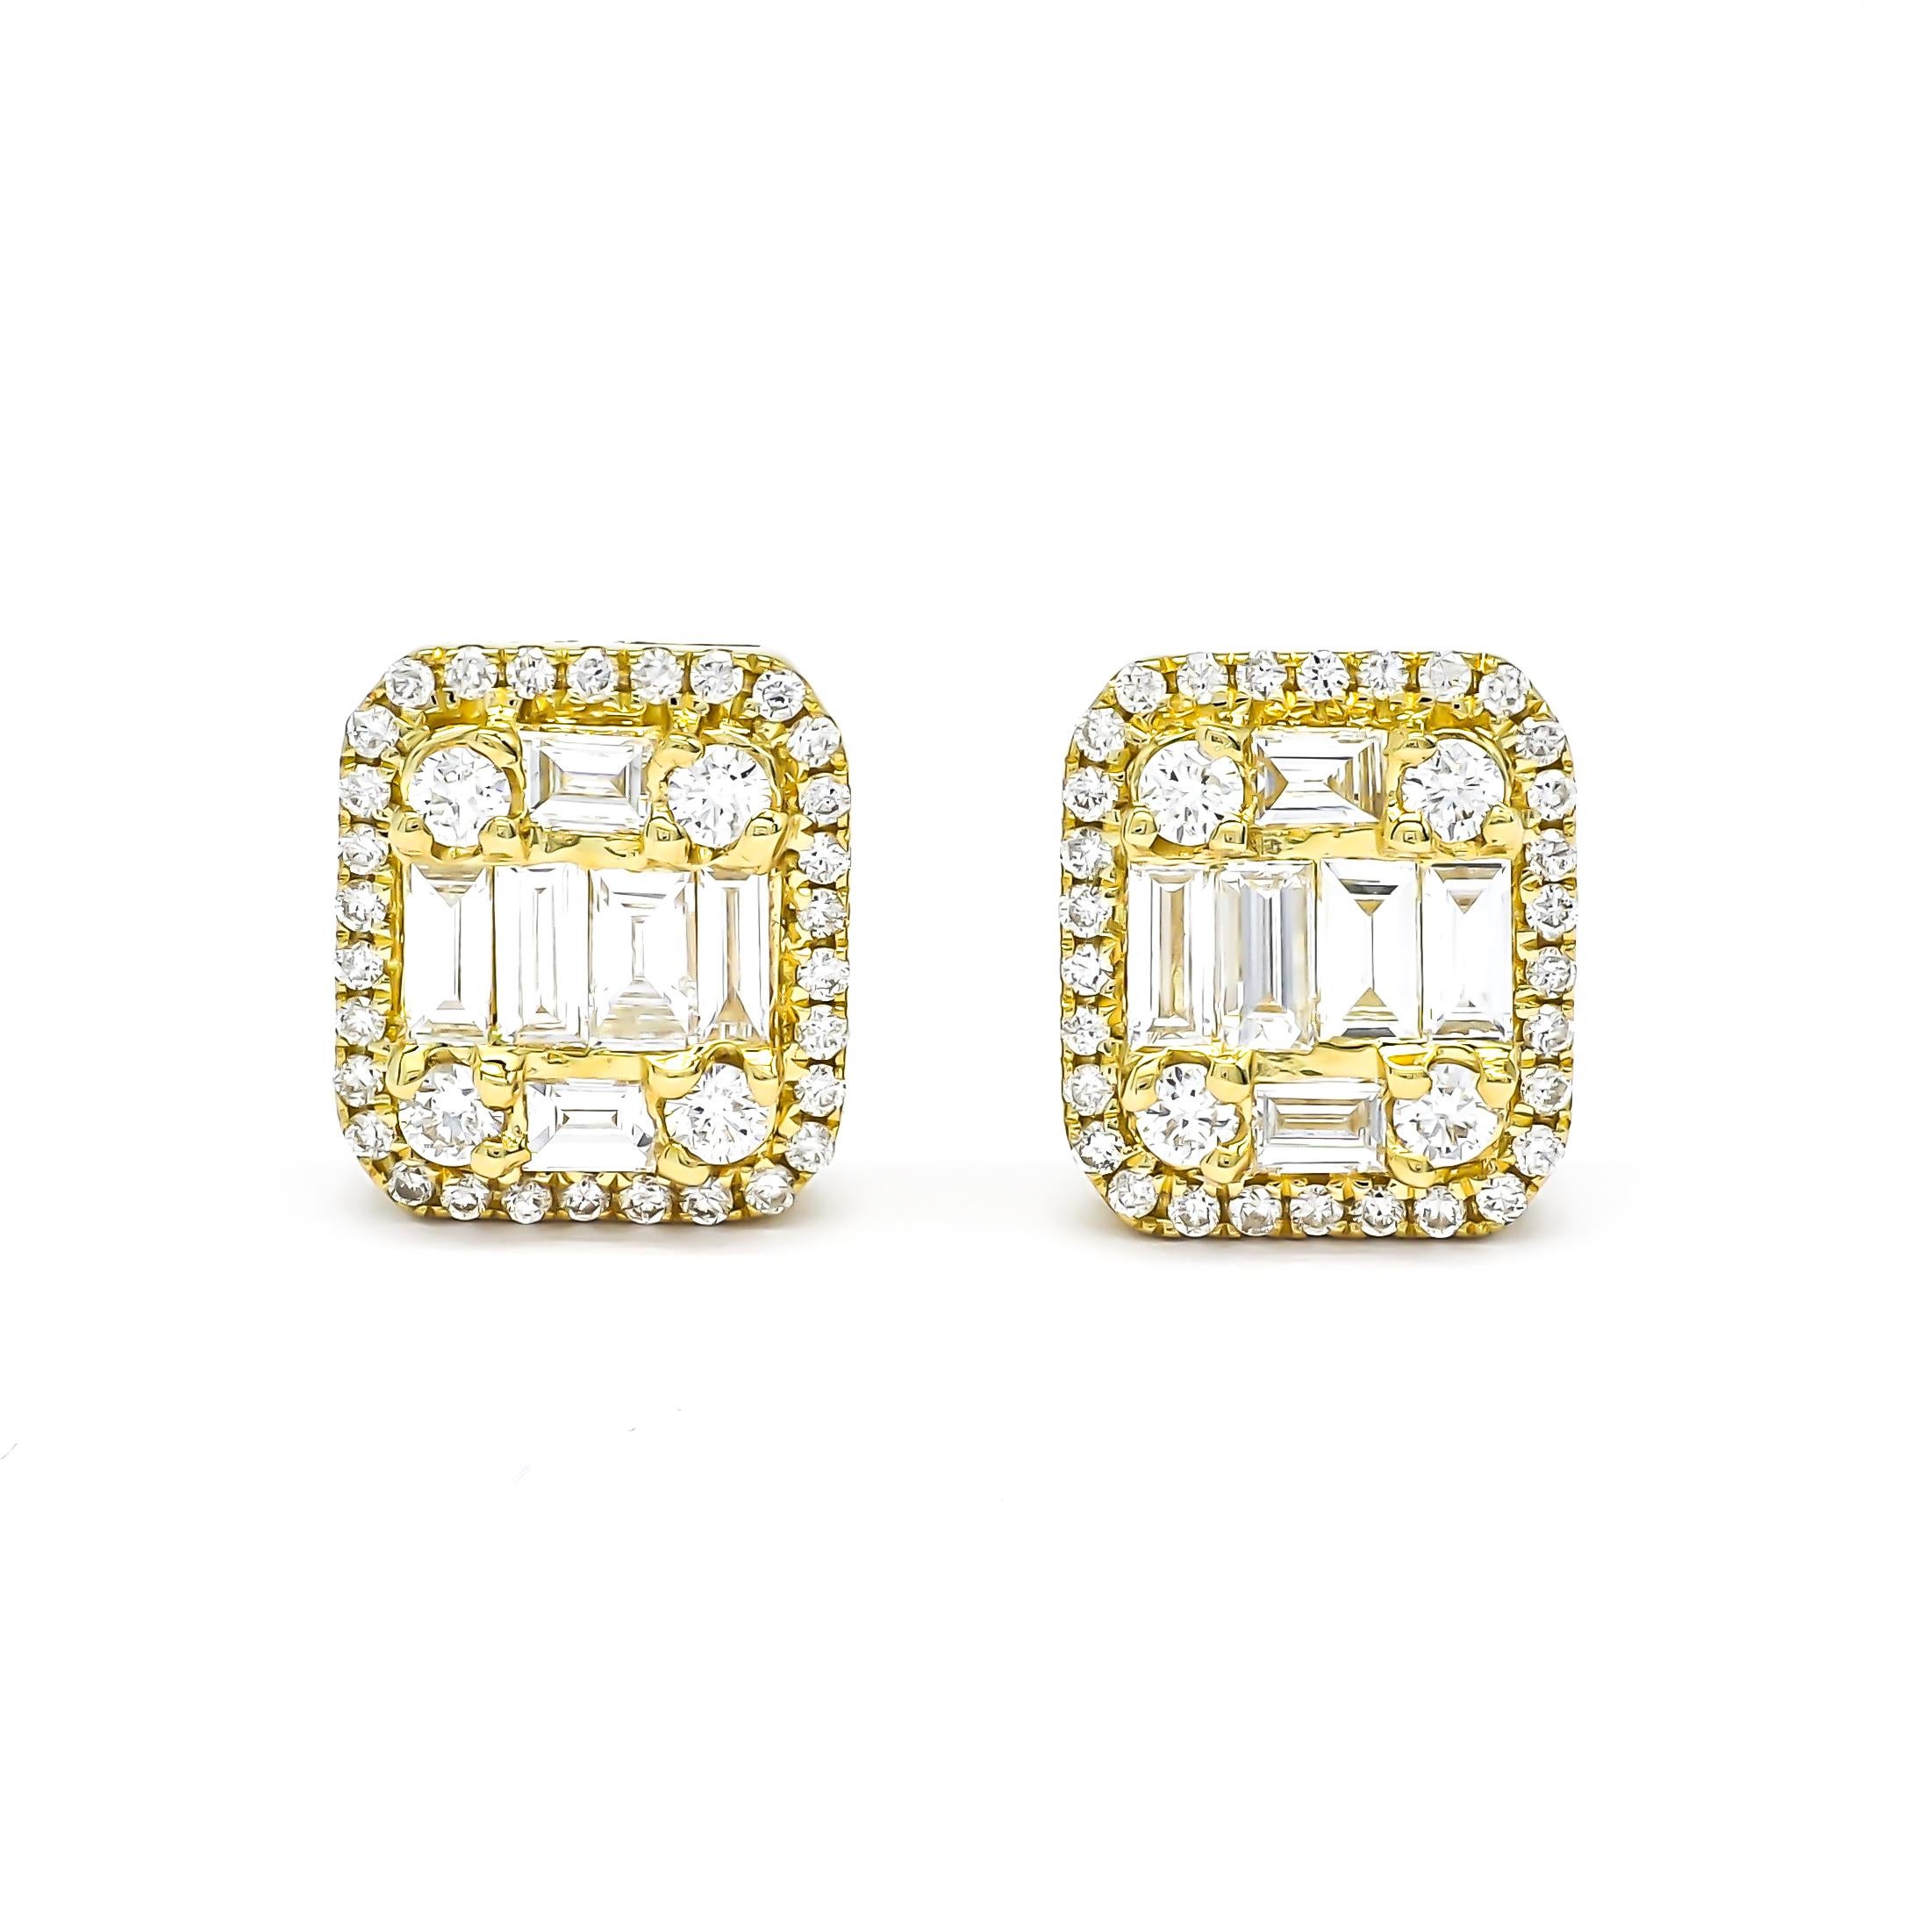 Gönnen Sie sich Luxus mit diesen handgefertigten 18KT Gelbgold Halo-Cluster-Ohrsteckern. Das Cluster-Design strahlt Eleganz und Luxus aus und enthält nur natürliche Diamanten von höchster Qualität. In der Mitte jedes Ohrrings befinden sich Diamanten